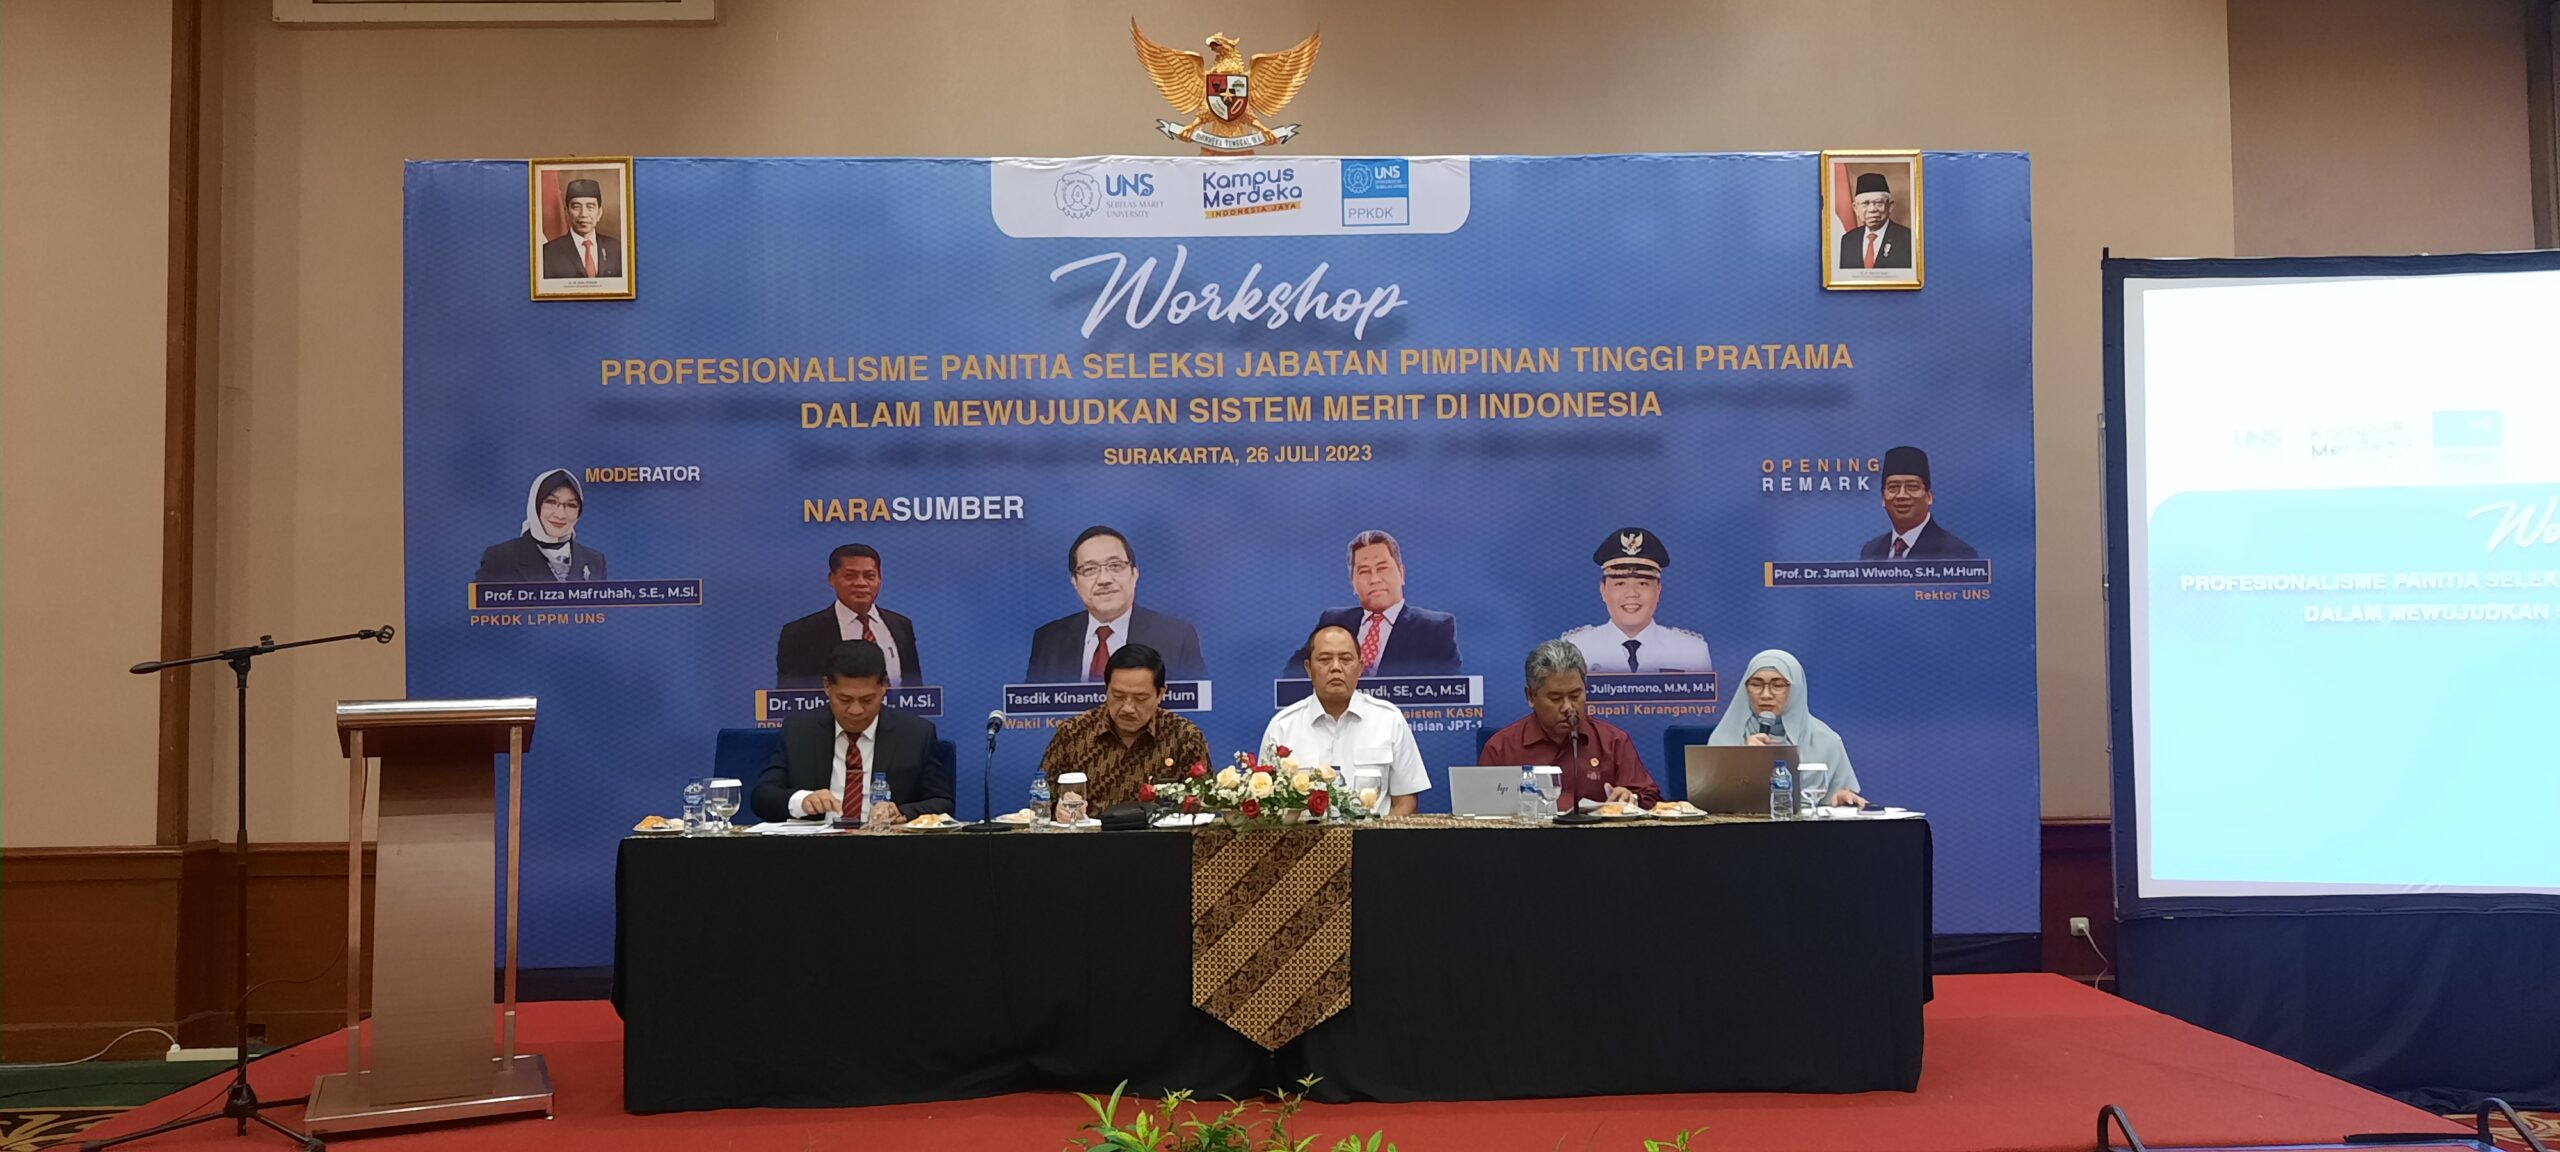 PPKDK LPPM UNS Gelar Workshop Profesionalisme Panitia Seleksi Jabatan Pimpinan Tinggi Pratama dalam Mewujudkan Sistem Merit di Indonesia